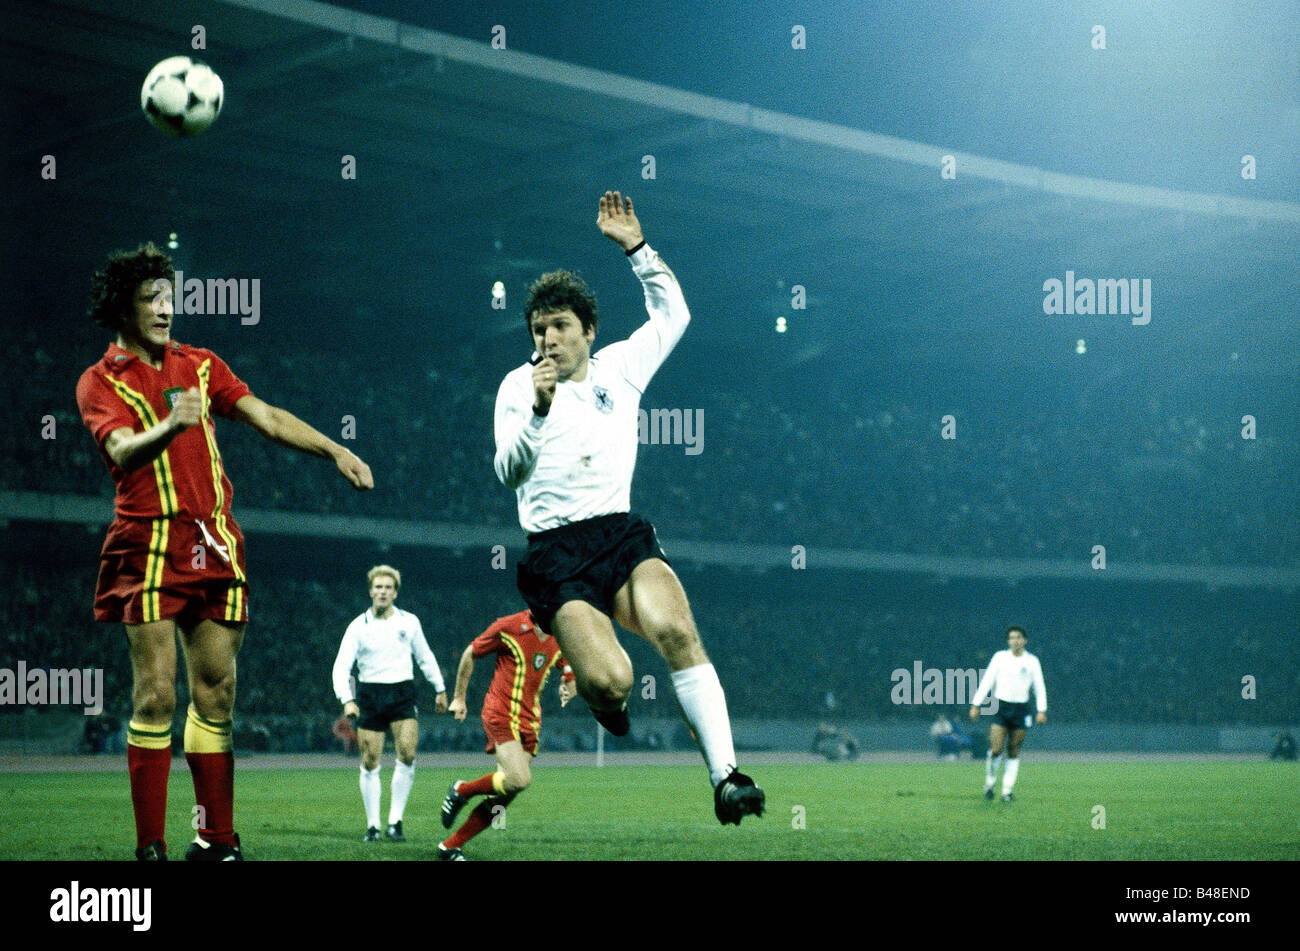 Sport / Sport, Fußball, Fußball, EM-Qualifikation Wales gegen Deutschland  in Wrexham, Wales (0:2), 5.2.1979 Stockfotografie - Alamy